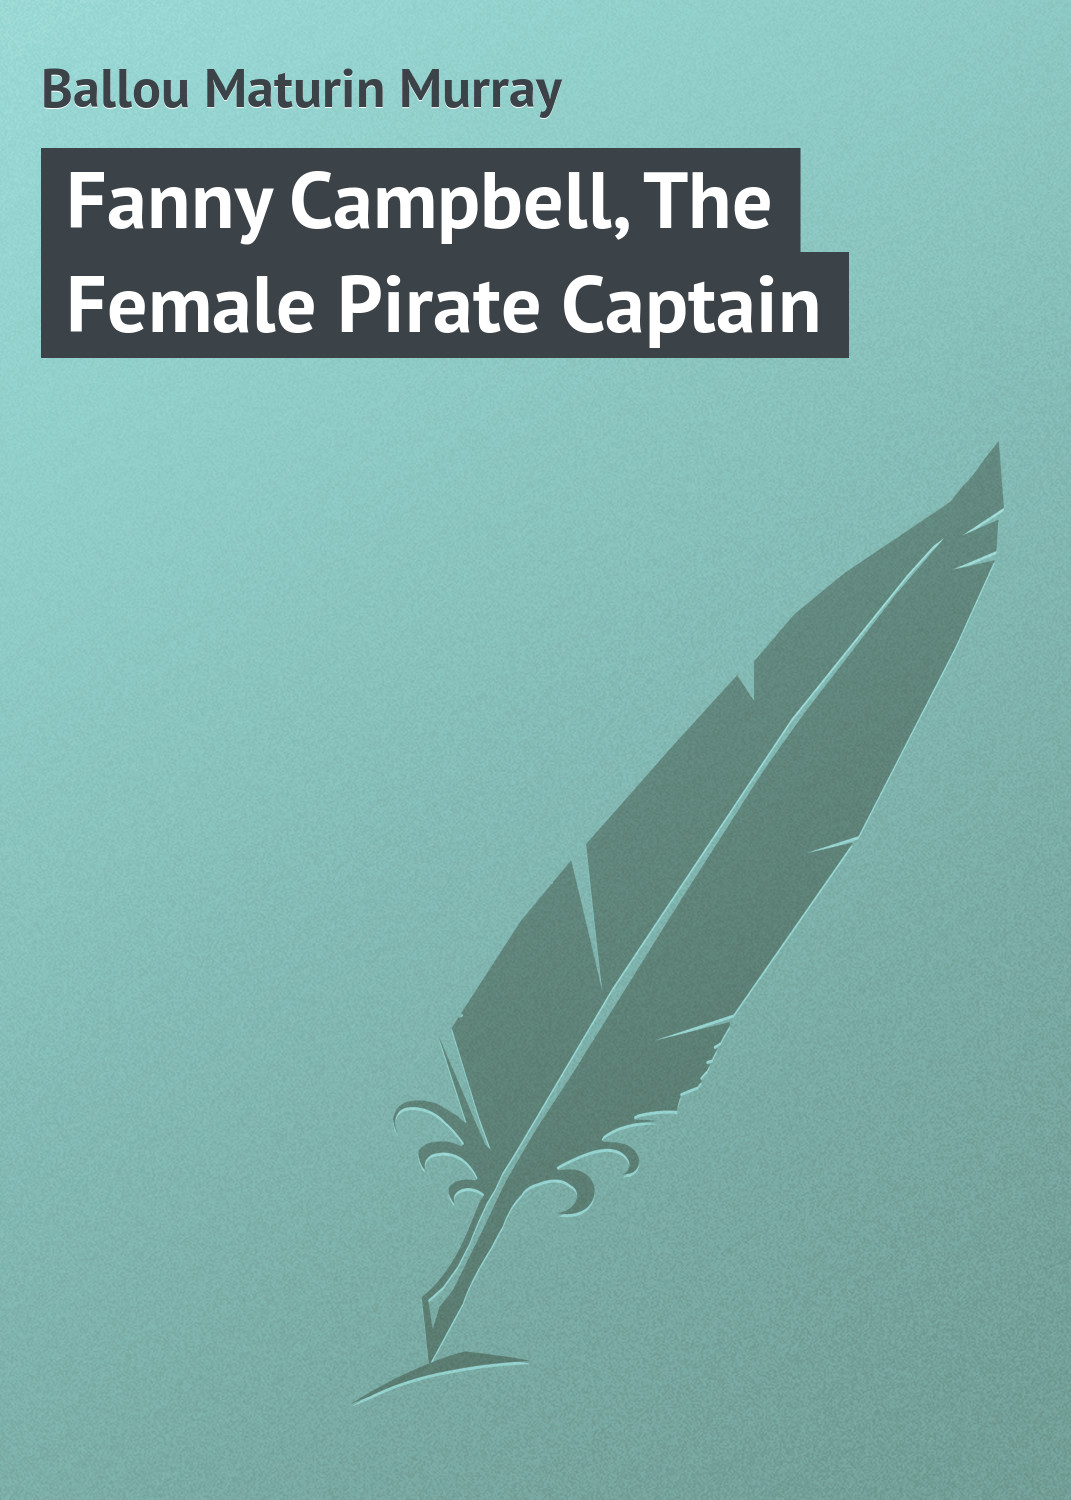 Книга Fanny Campbell, The Female Pirate Captain из серии , созданная Maturin Ballou, может относится к жанру Иностранные языки, Зарубежная классика. Стоимость электронной книги Fanny Campbell, The Female Pirate Captain с идентификатором 23162675 составляет 5.99 руб.